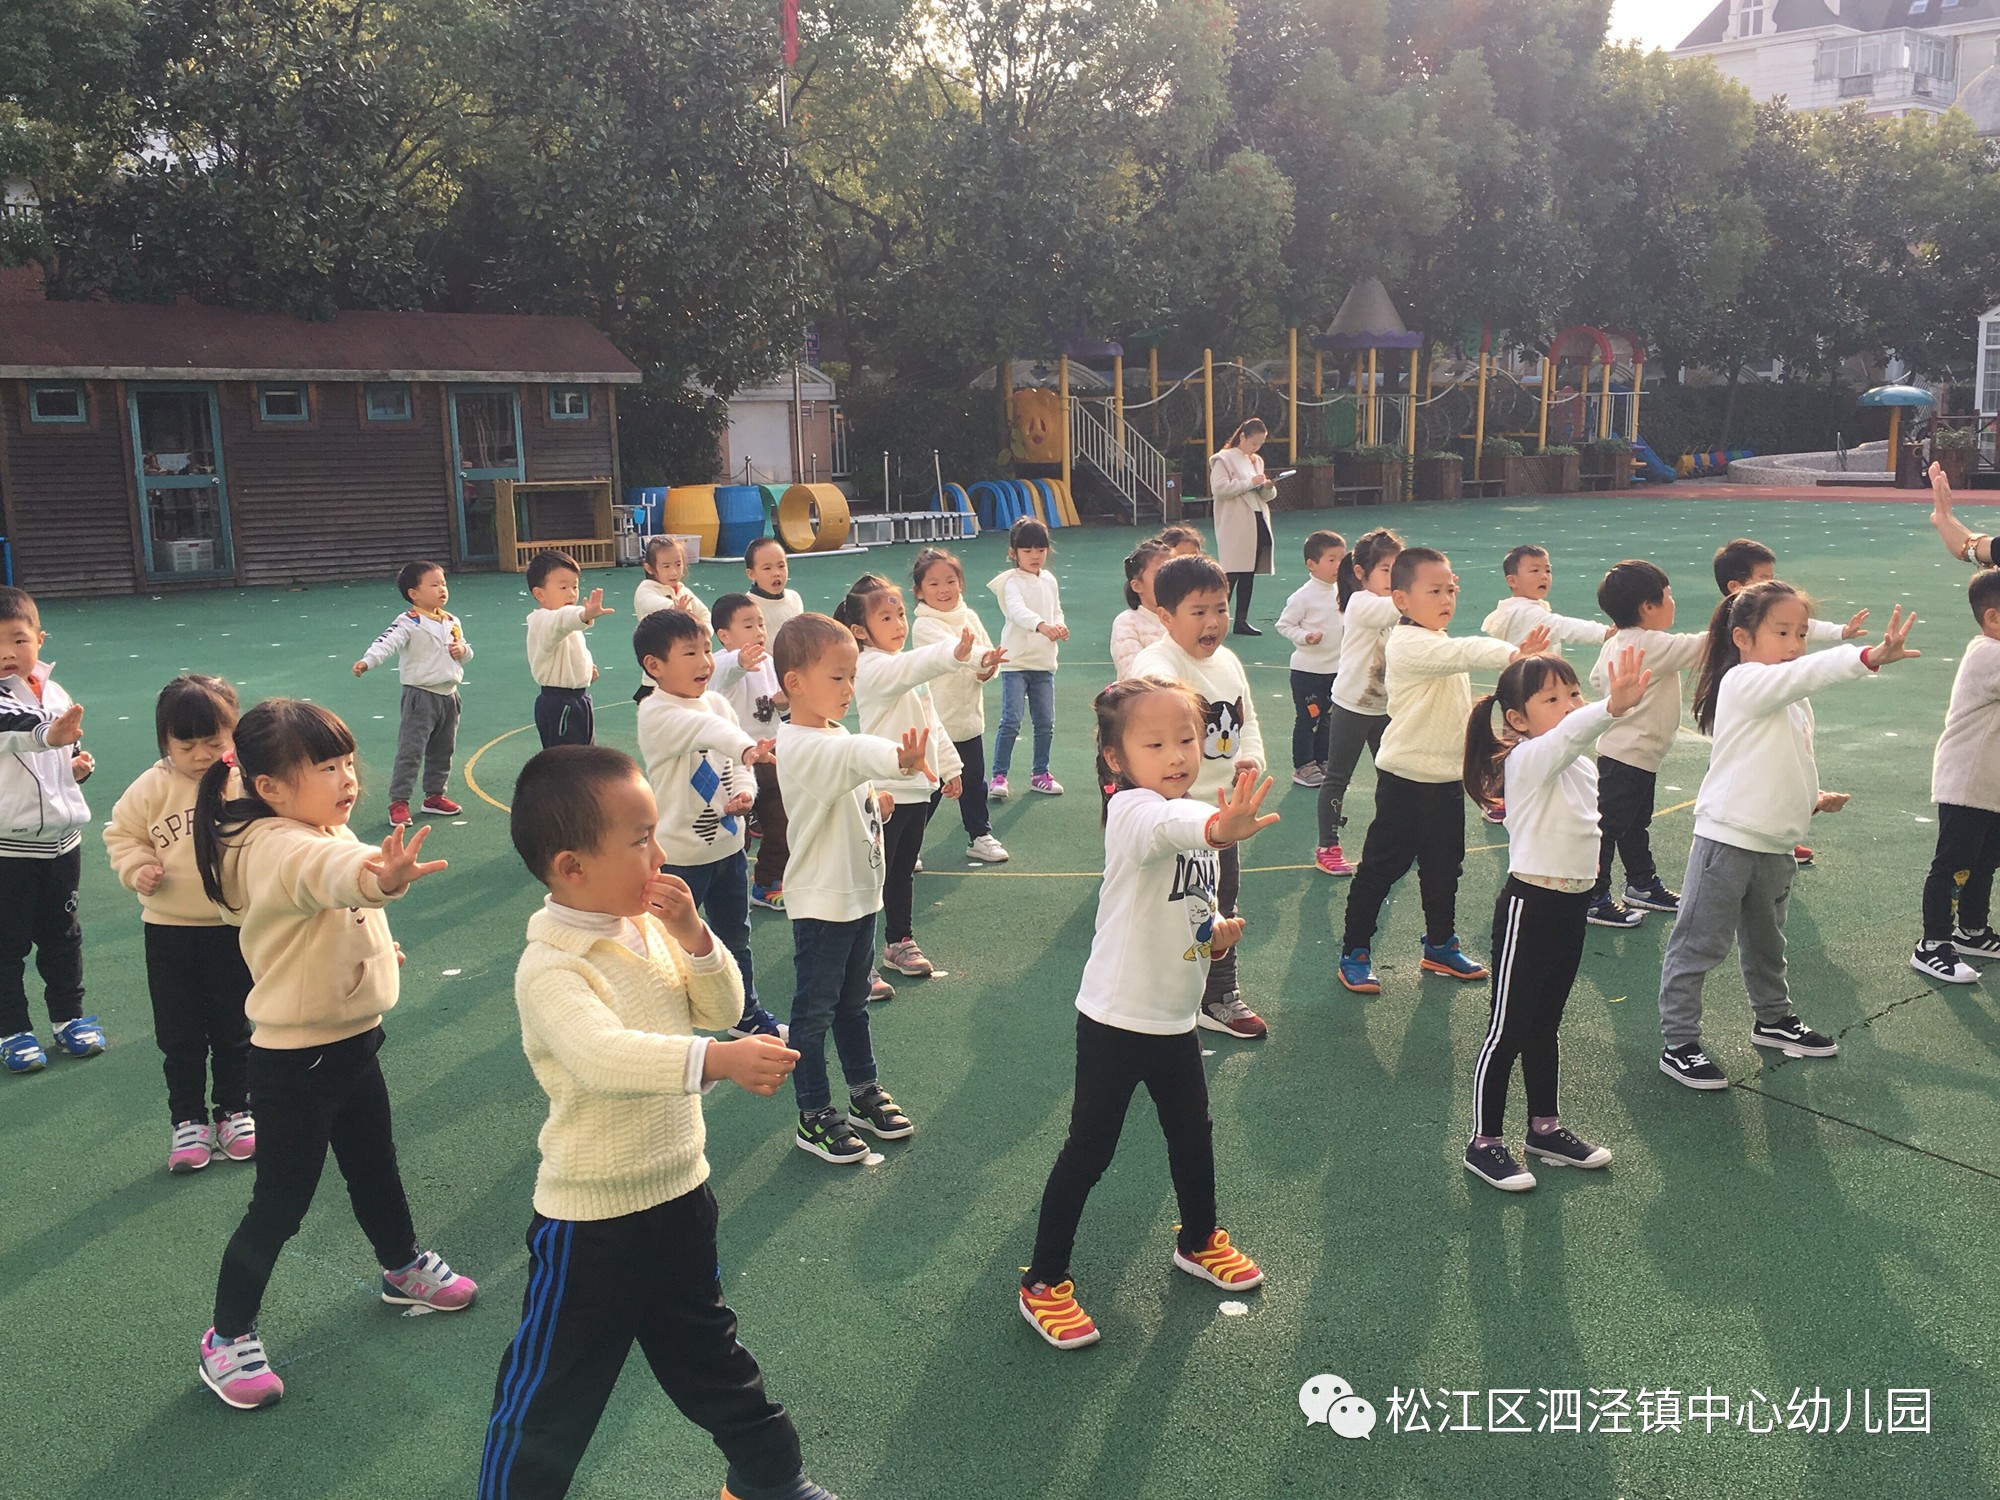 【新闻速递】健康锻炼乐哈哈——记泗泾幼儿园幼儿律动展示活动